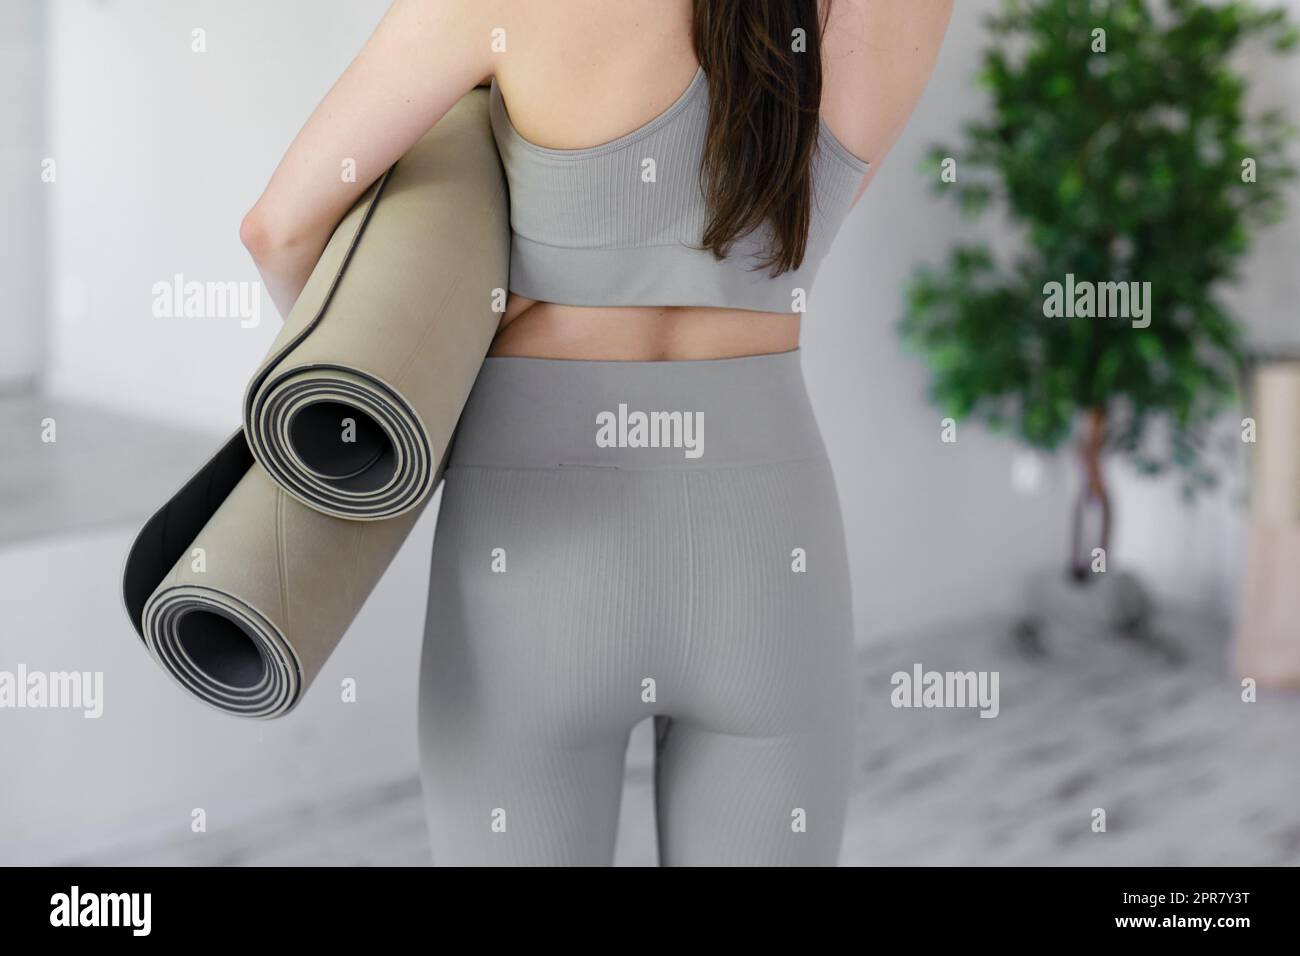 Junge schöne Frau, die Yogamatten hält, während sie in einem hellen Studio steht. Stockfoto